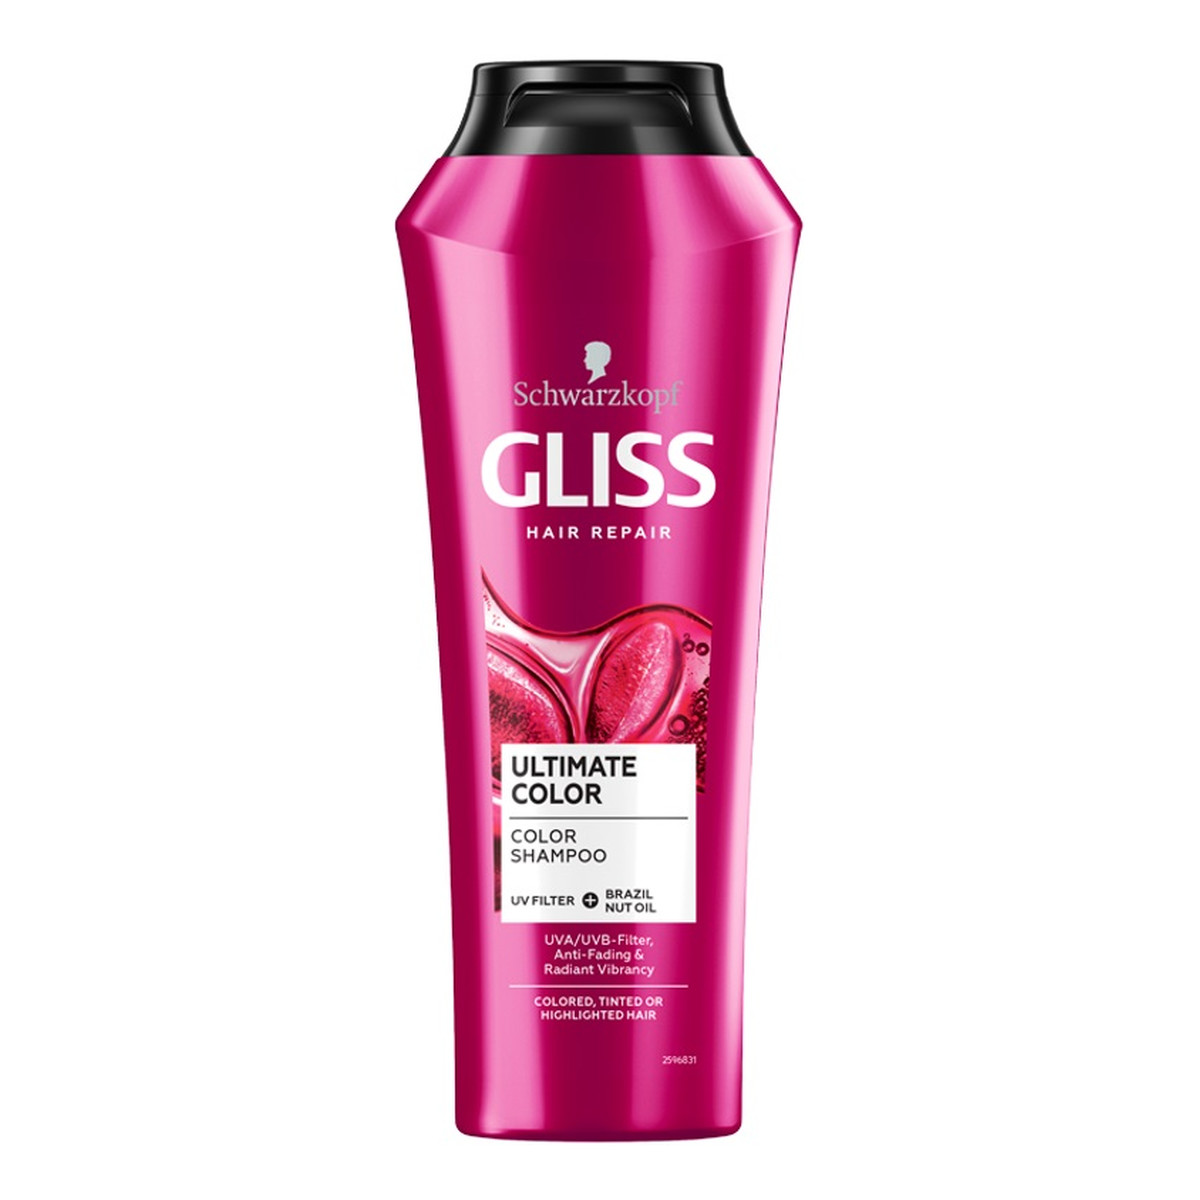 Gliss Ultimate Color Shampoo szampon do włosów farbowanych 250ml